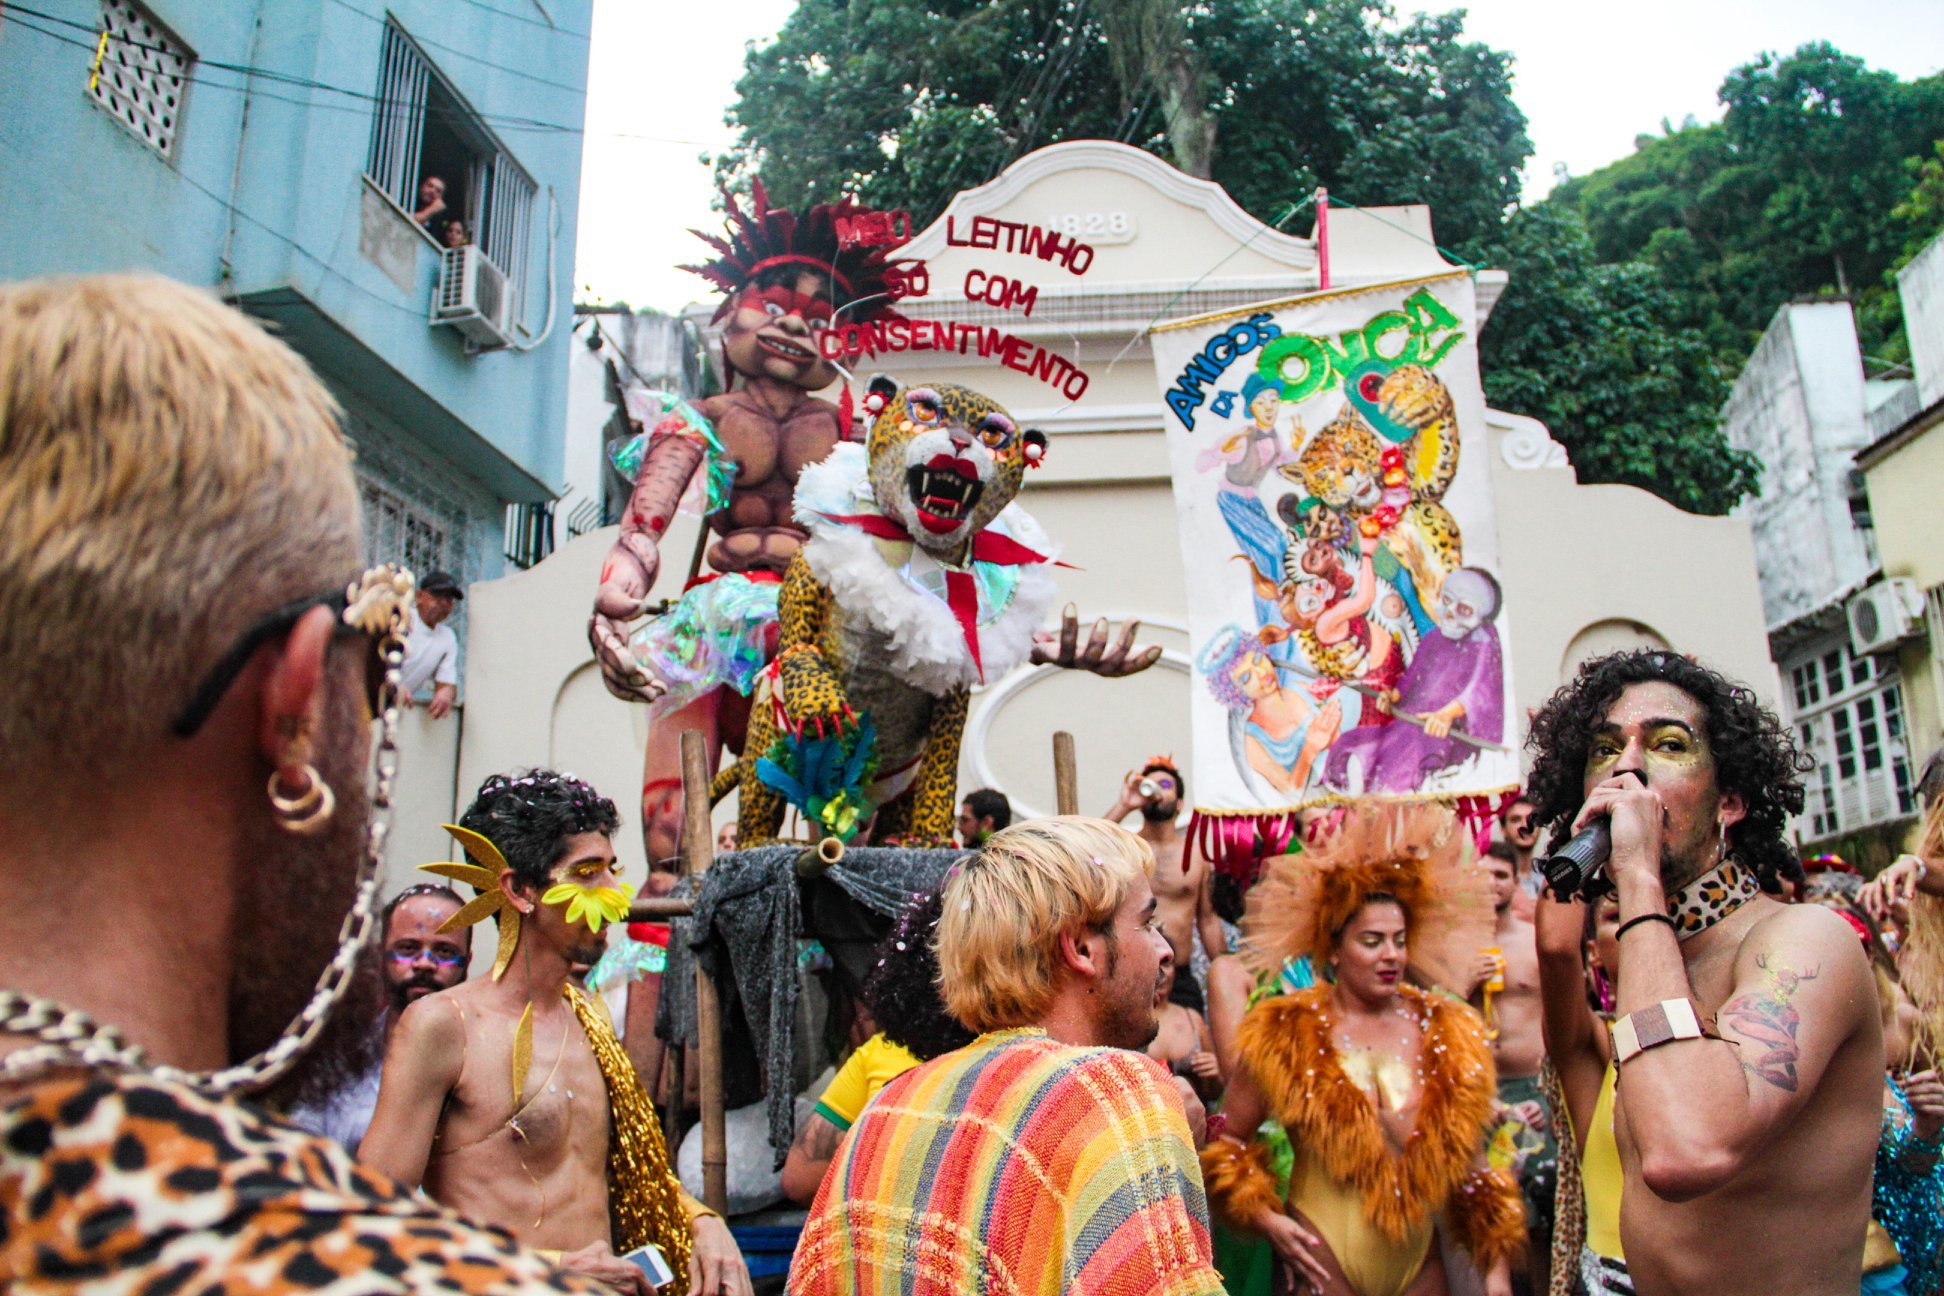 Desrespeitar povos ou minorias não condiz com a grande festa que toma as ruas pelo Brasil. Na hora de escolher a roupa, escolha o bom-senso